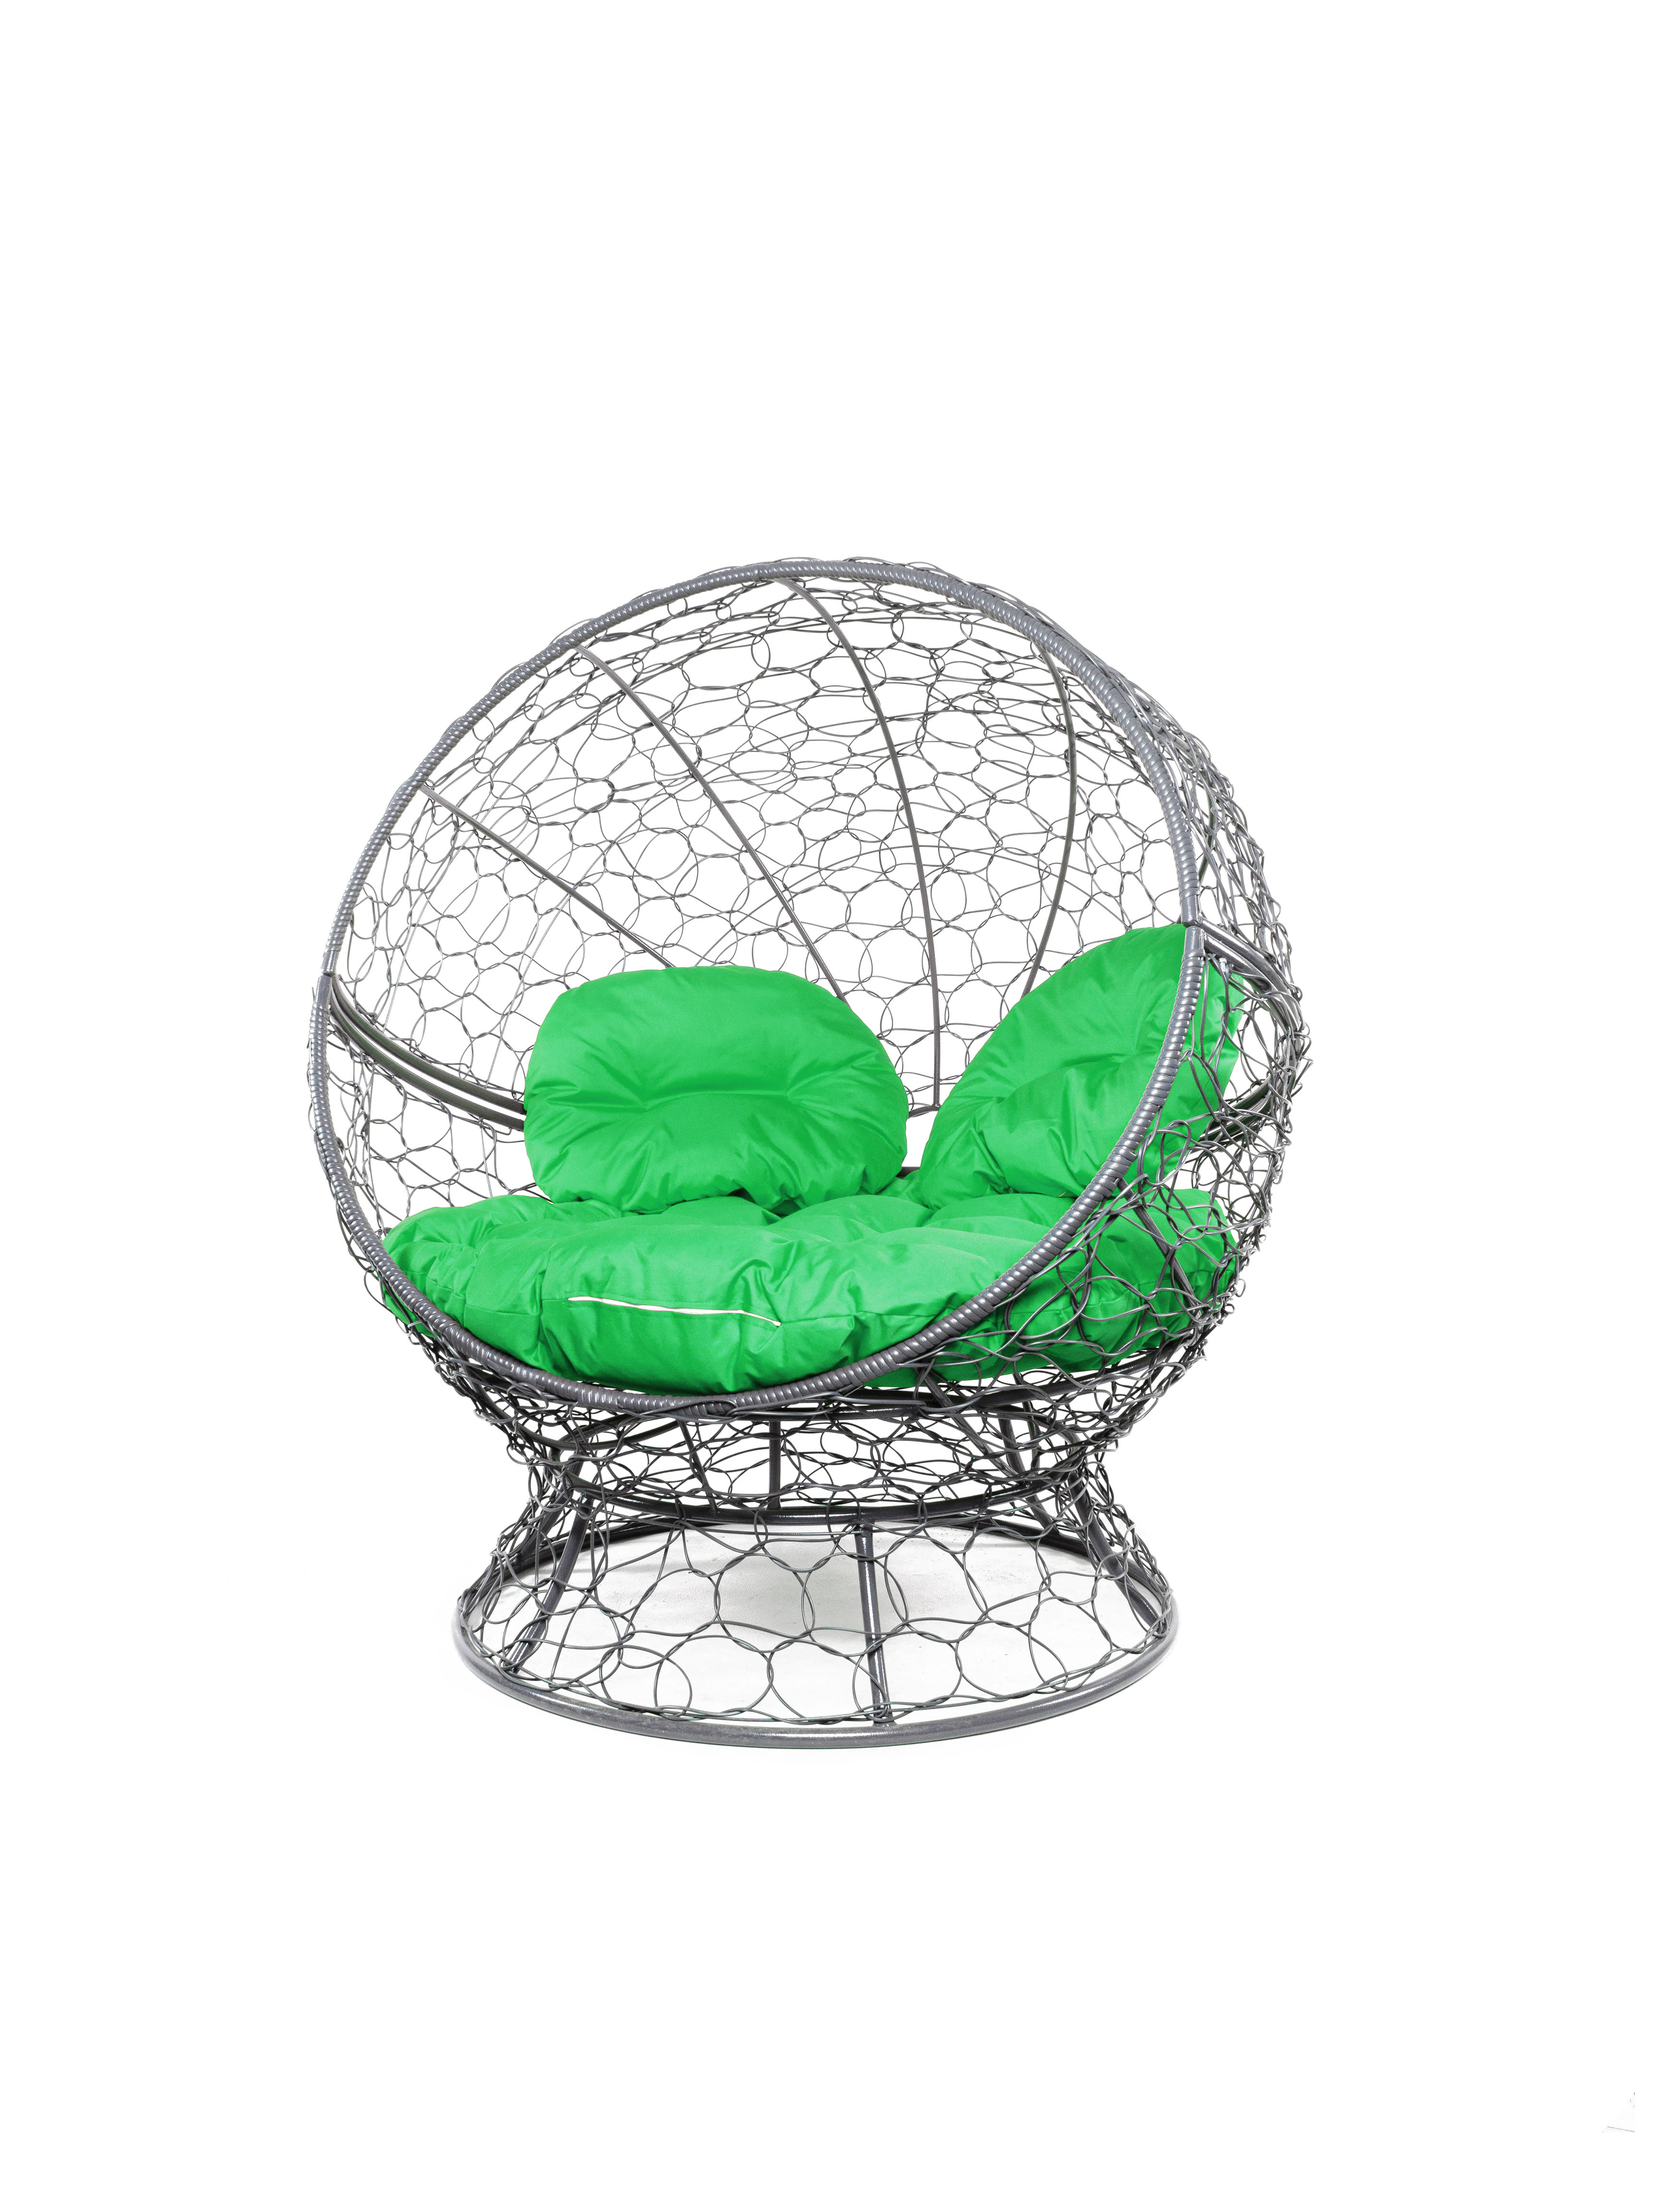 Кресло садовое M-Group Апельсин серое 11520304 зелёная подушка